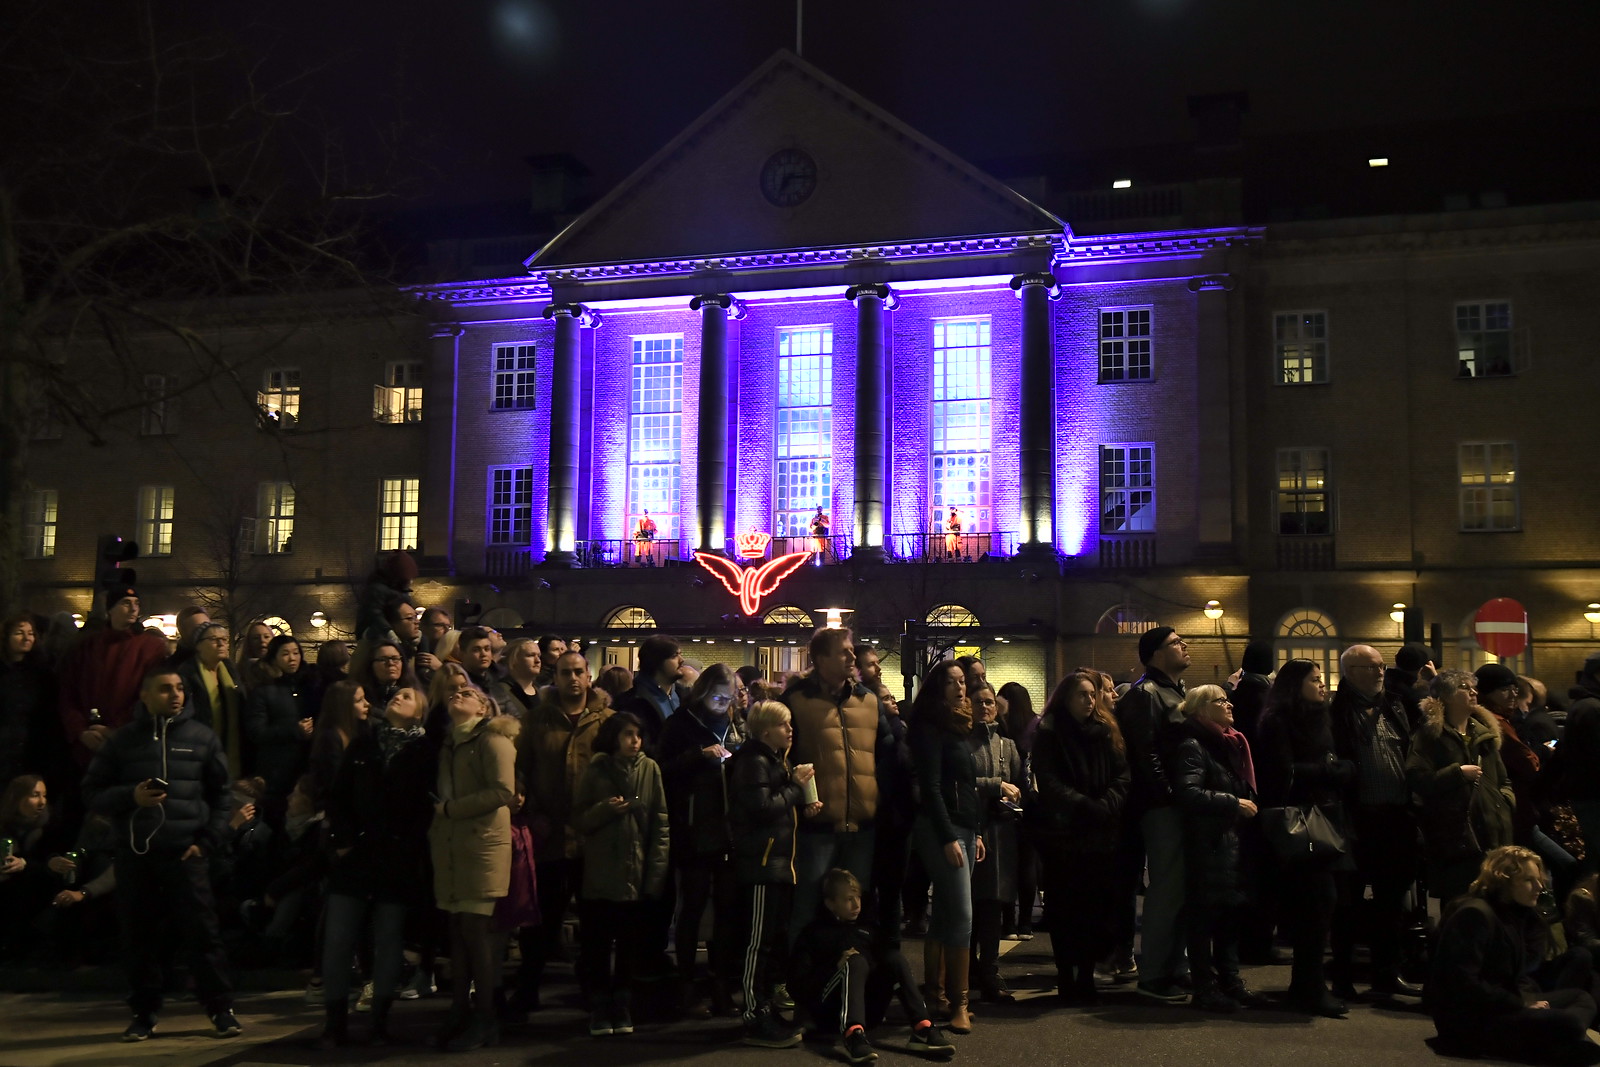 Officiel åbning af Aarhus 2017 - Europæisk Kulturhovedstad